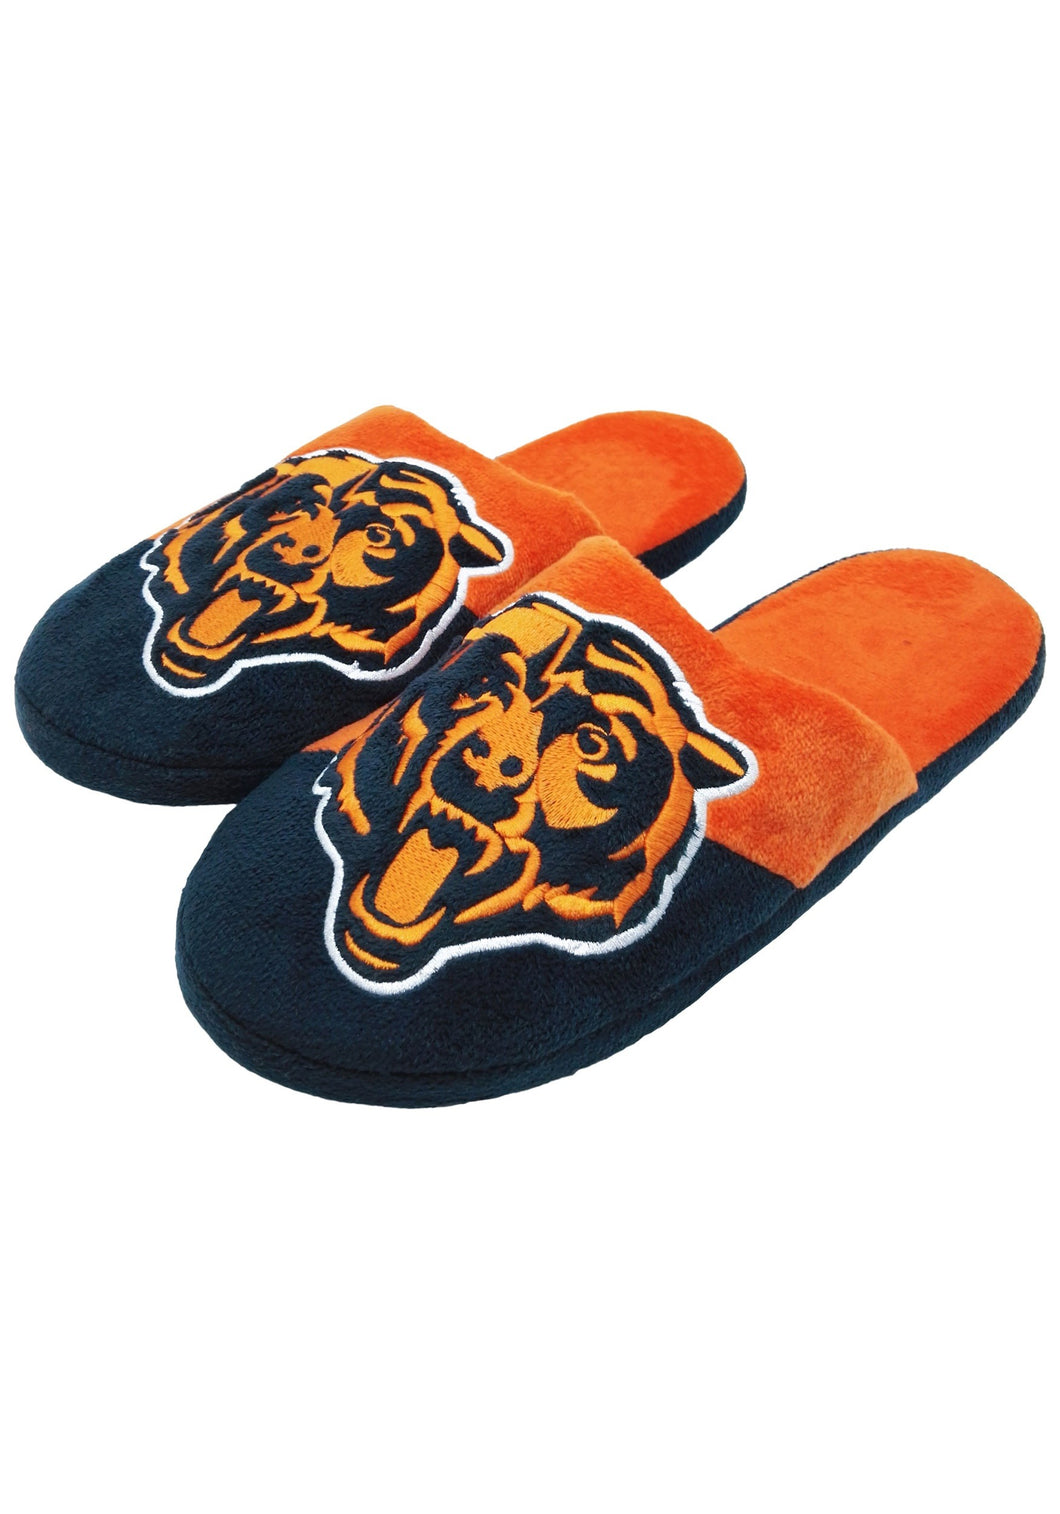 Chicago Bears NFL Colorblock Slide Slippers